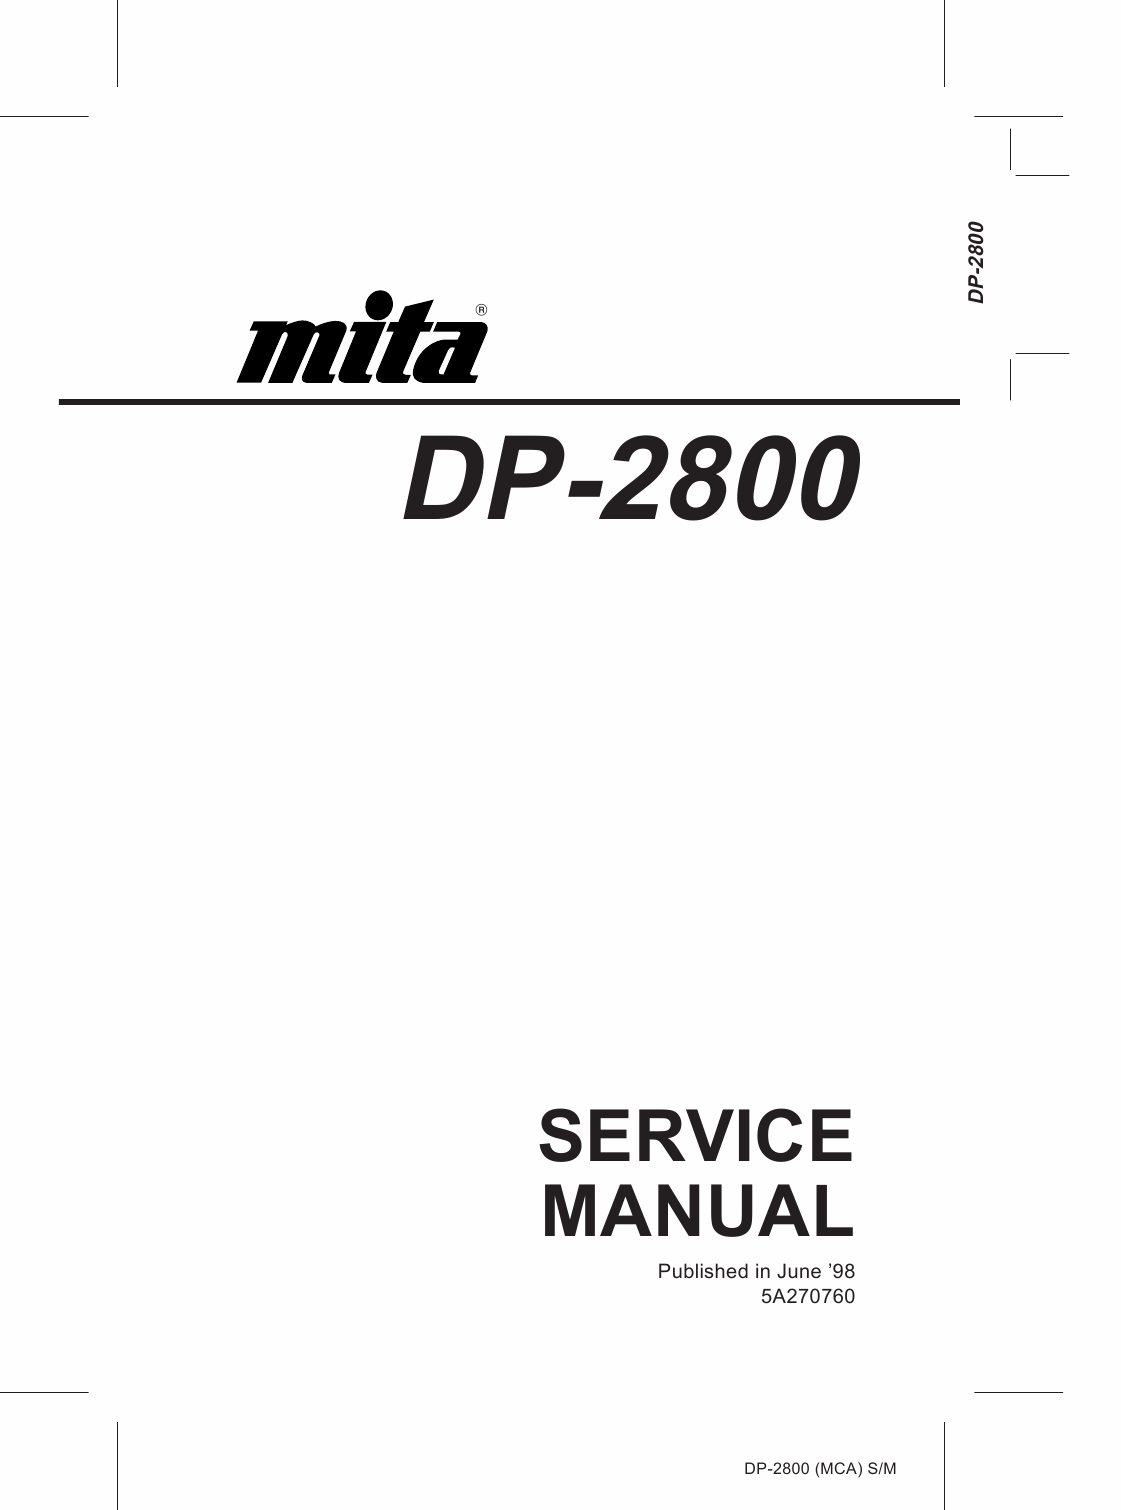 KYOCERA LaserPrinter DP-2800 Parts and Service Manual-1